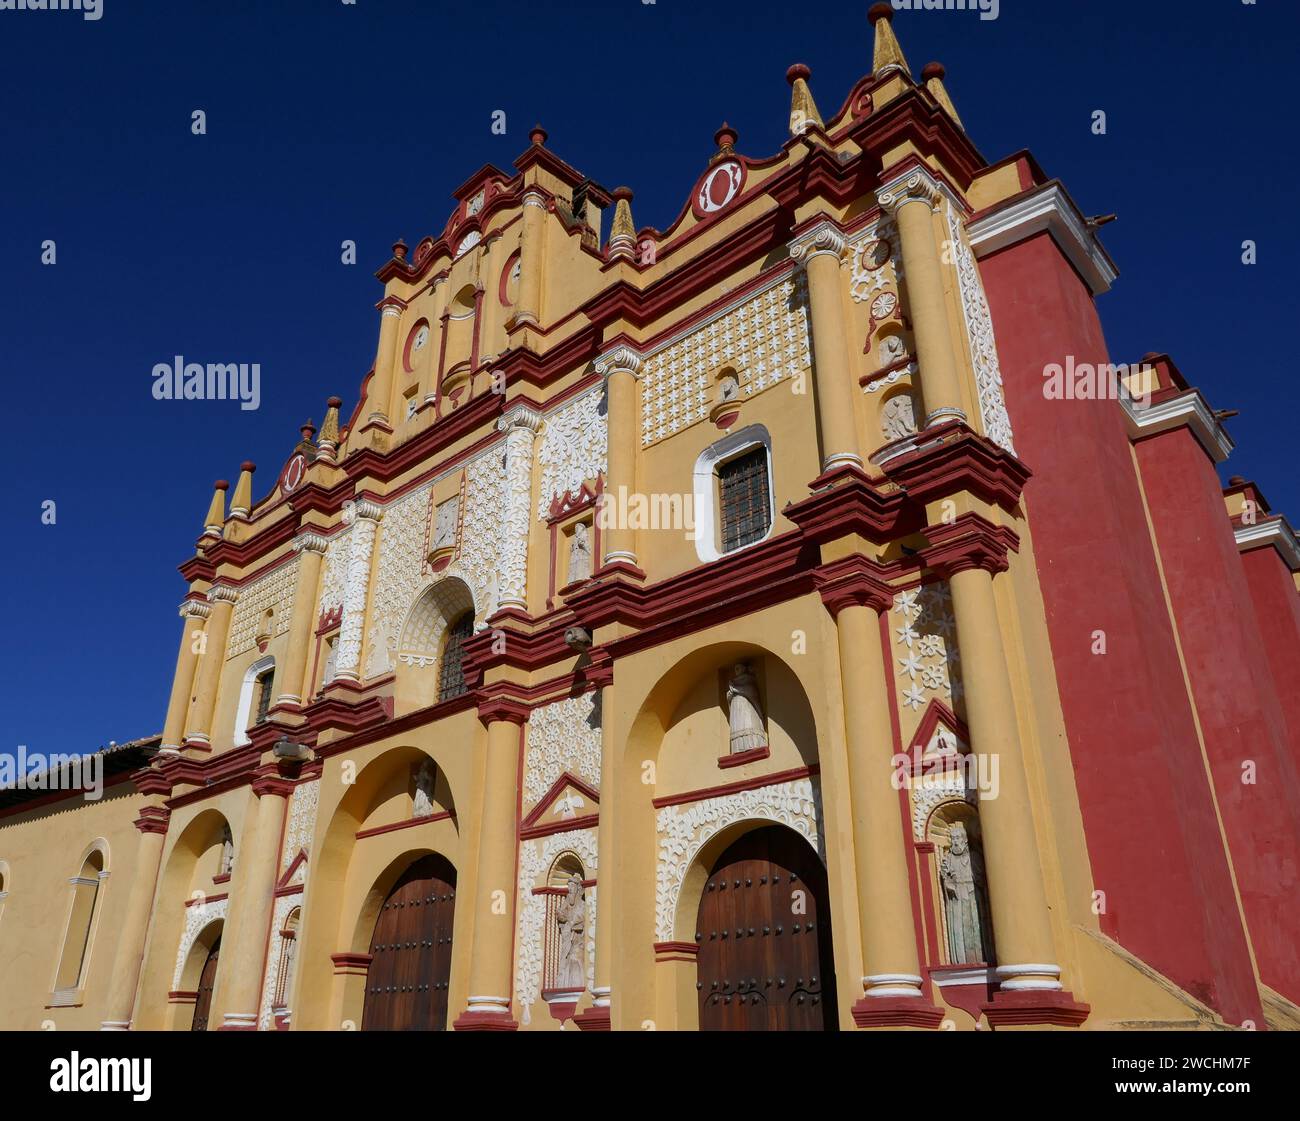 Colorful baroque style church facade against a clear blue sky, San Cristobal de Las Casas, Mexico Stock Photo